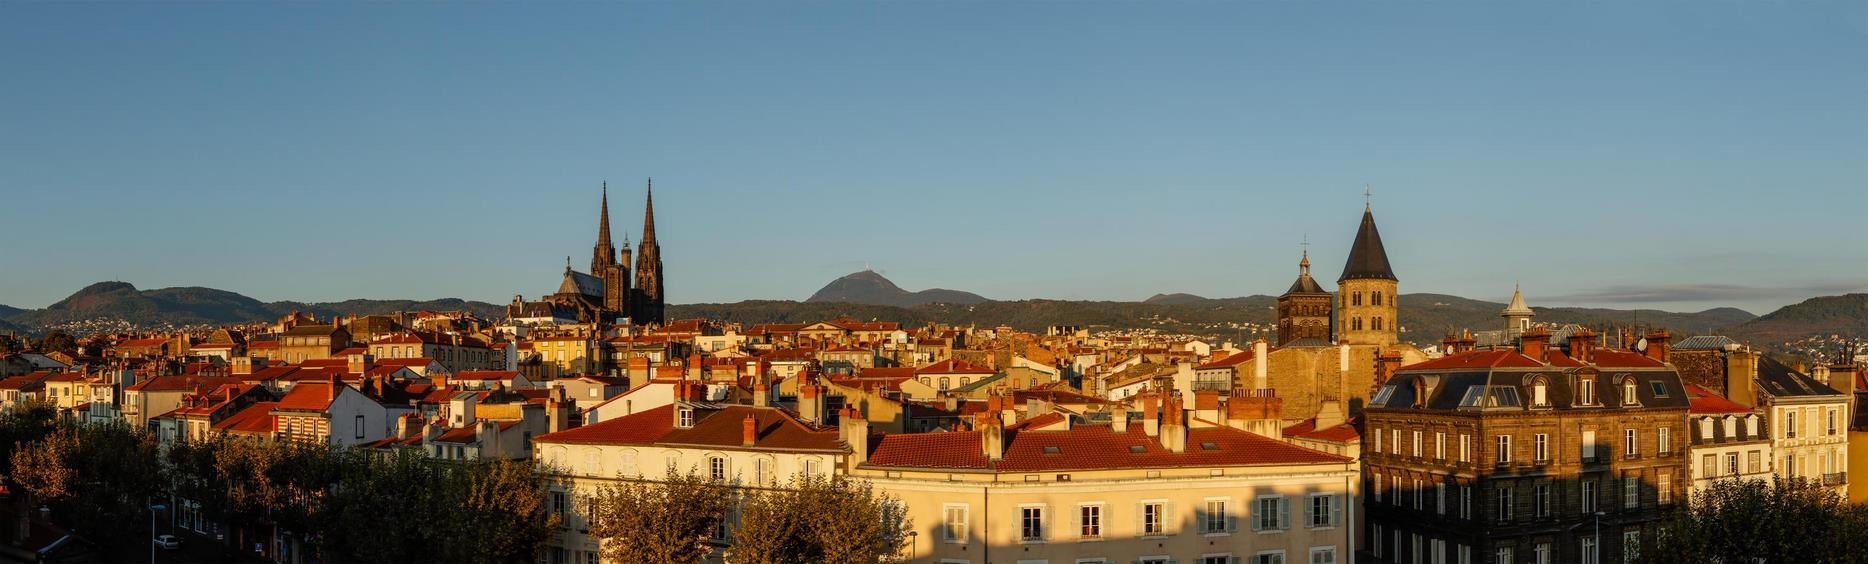 Clermont Ferrand, prefecture of Puy de Dôme